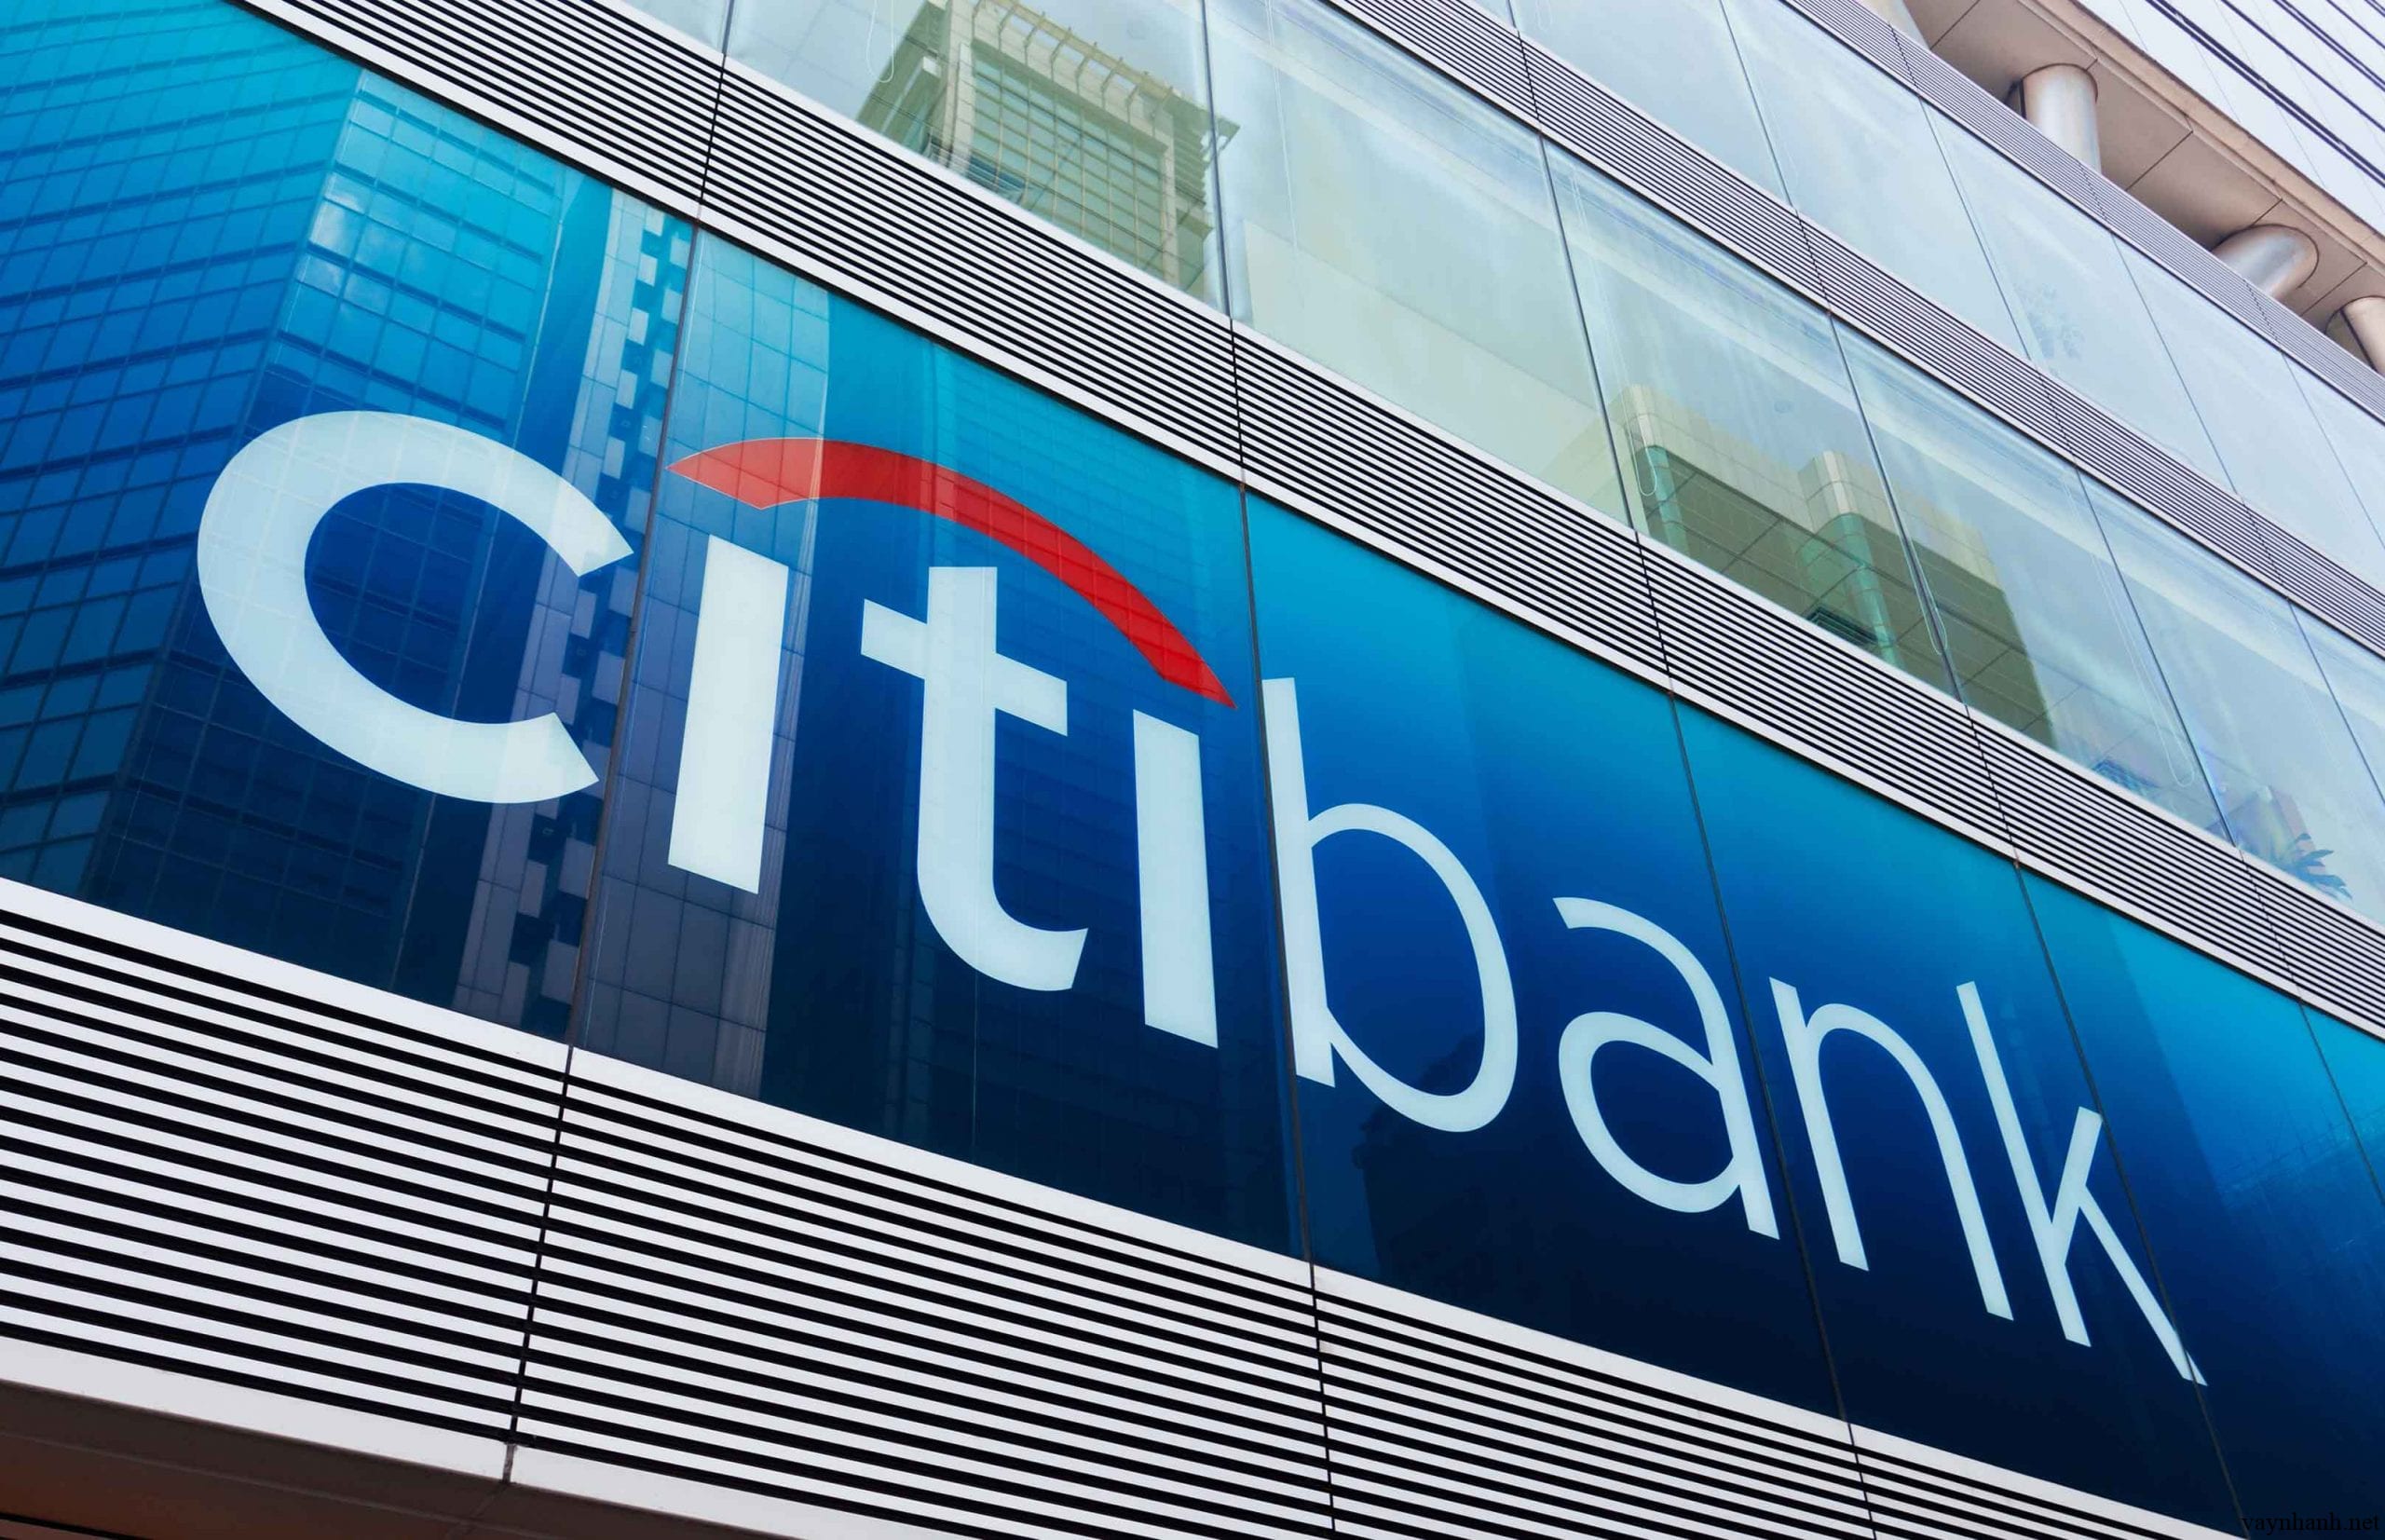 Vay tiêu dùng ngân hàng Citibank